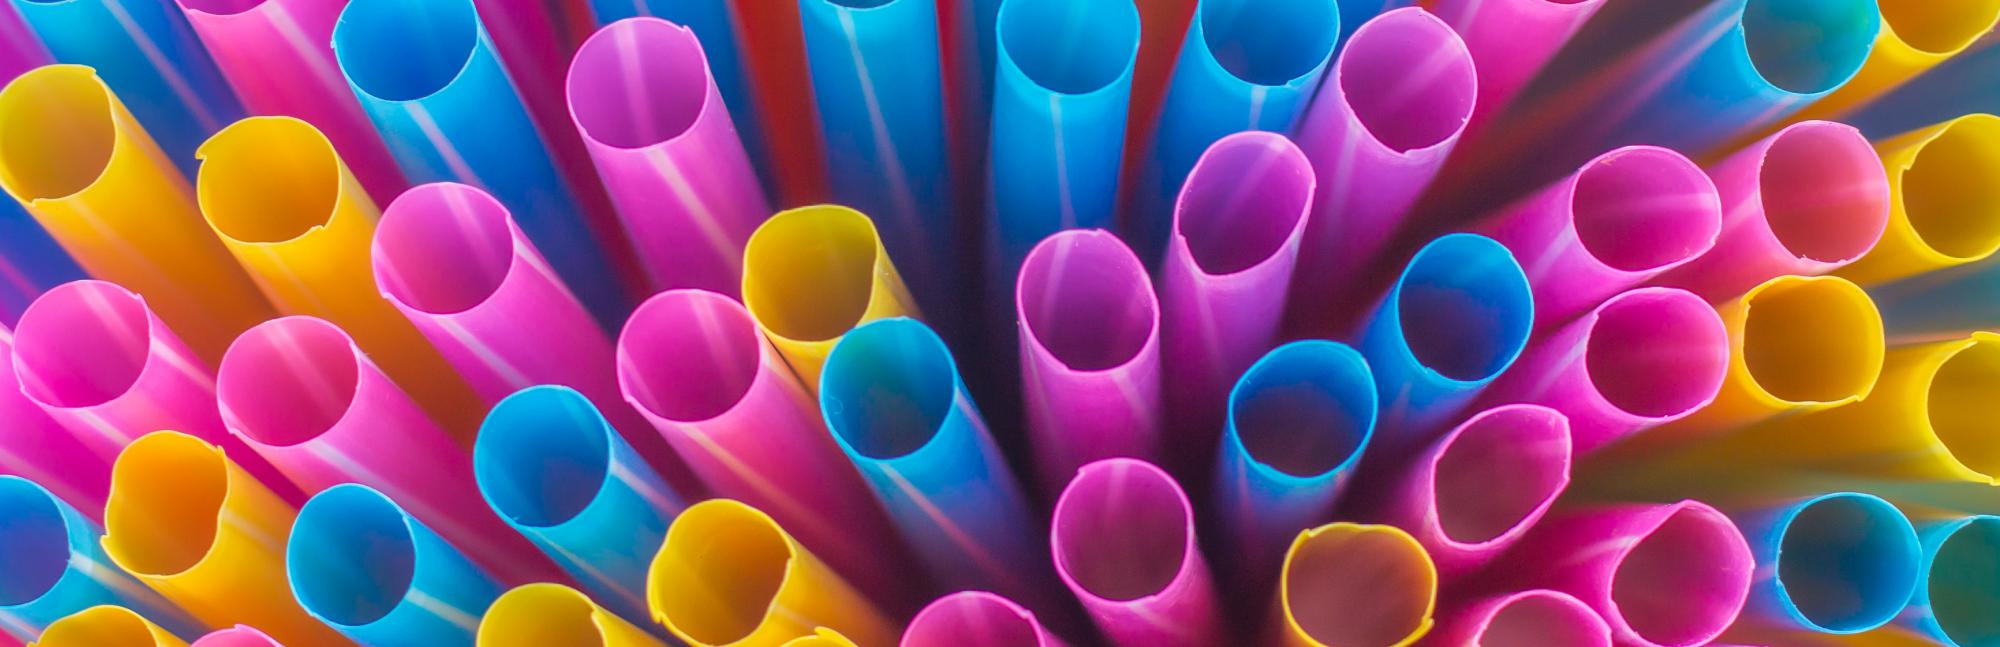 Colourful plastic straws